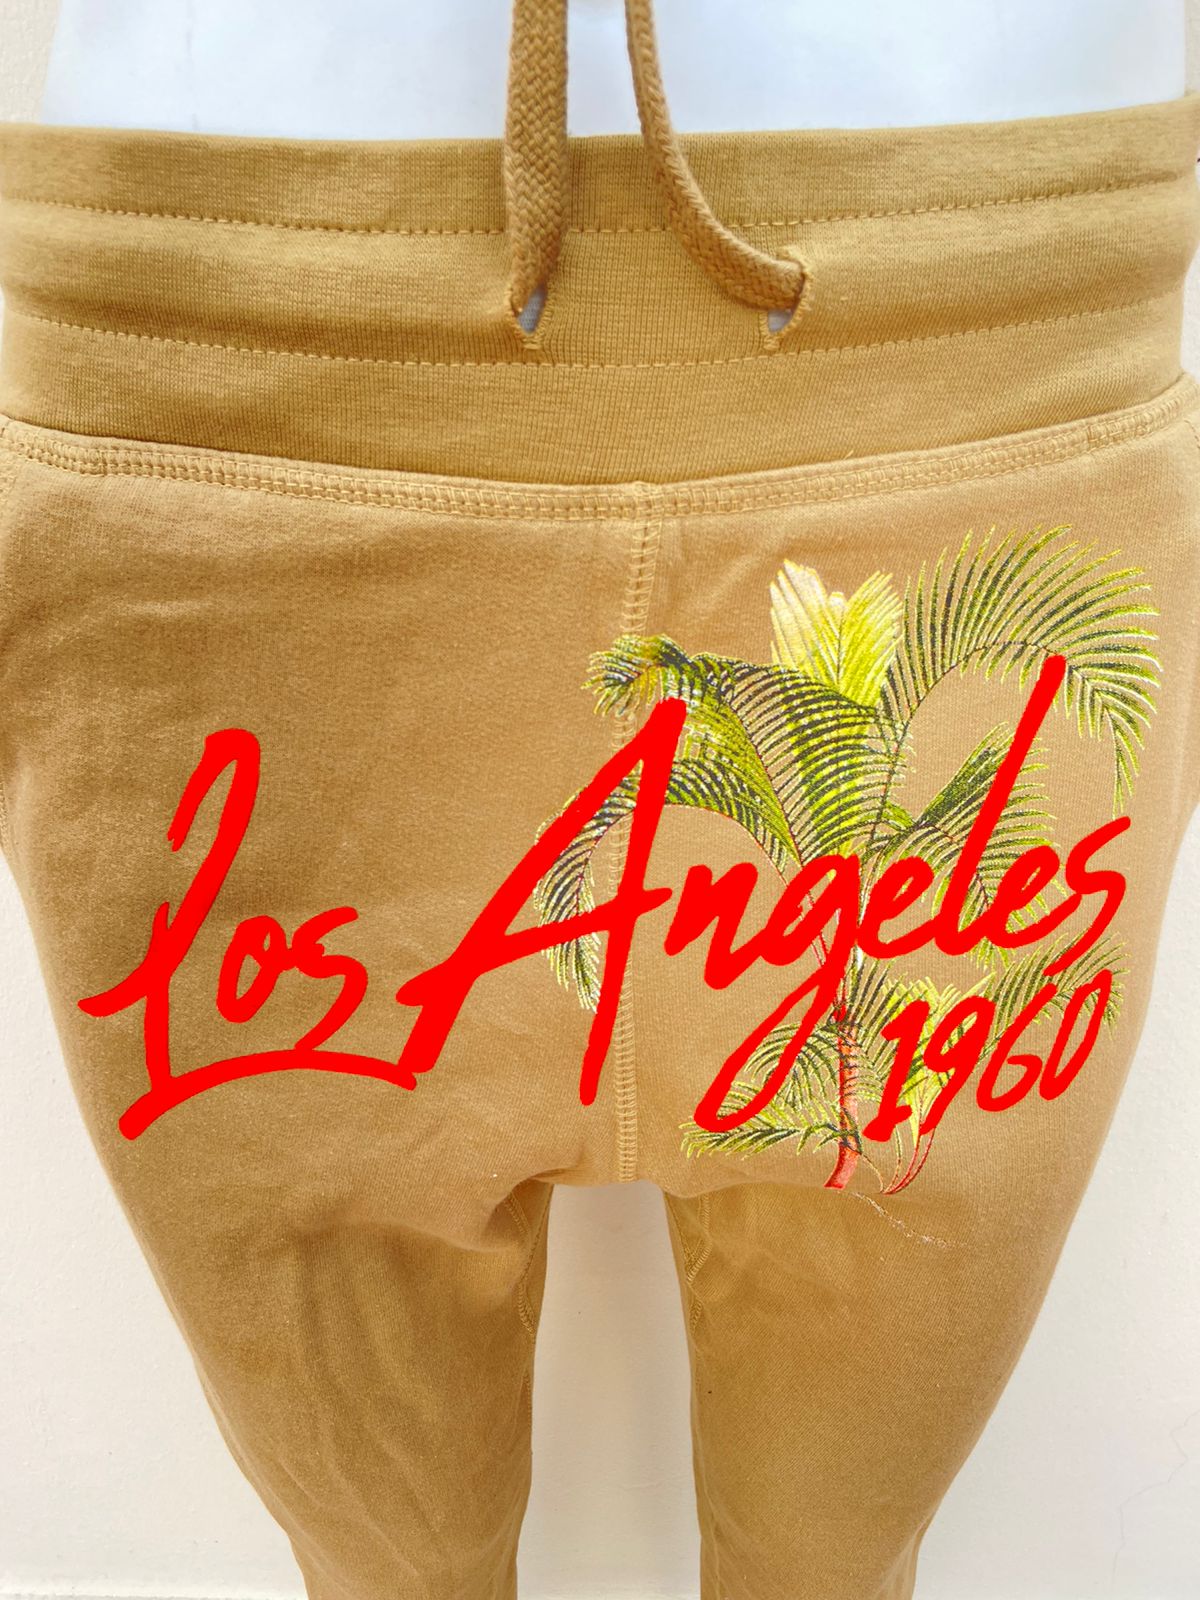 Pantalon/ Jogger FASHION NOVA original, color caqui con letras LOS ÁNGELES 1960 en color naranja en el centro y palmeras verdes.